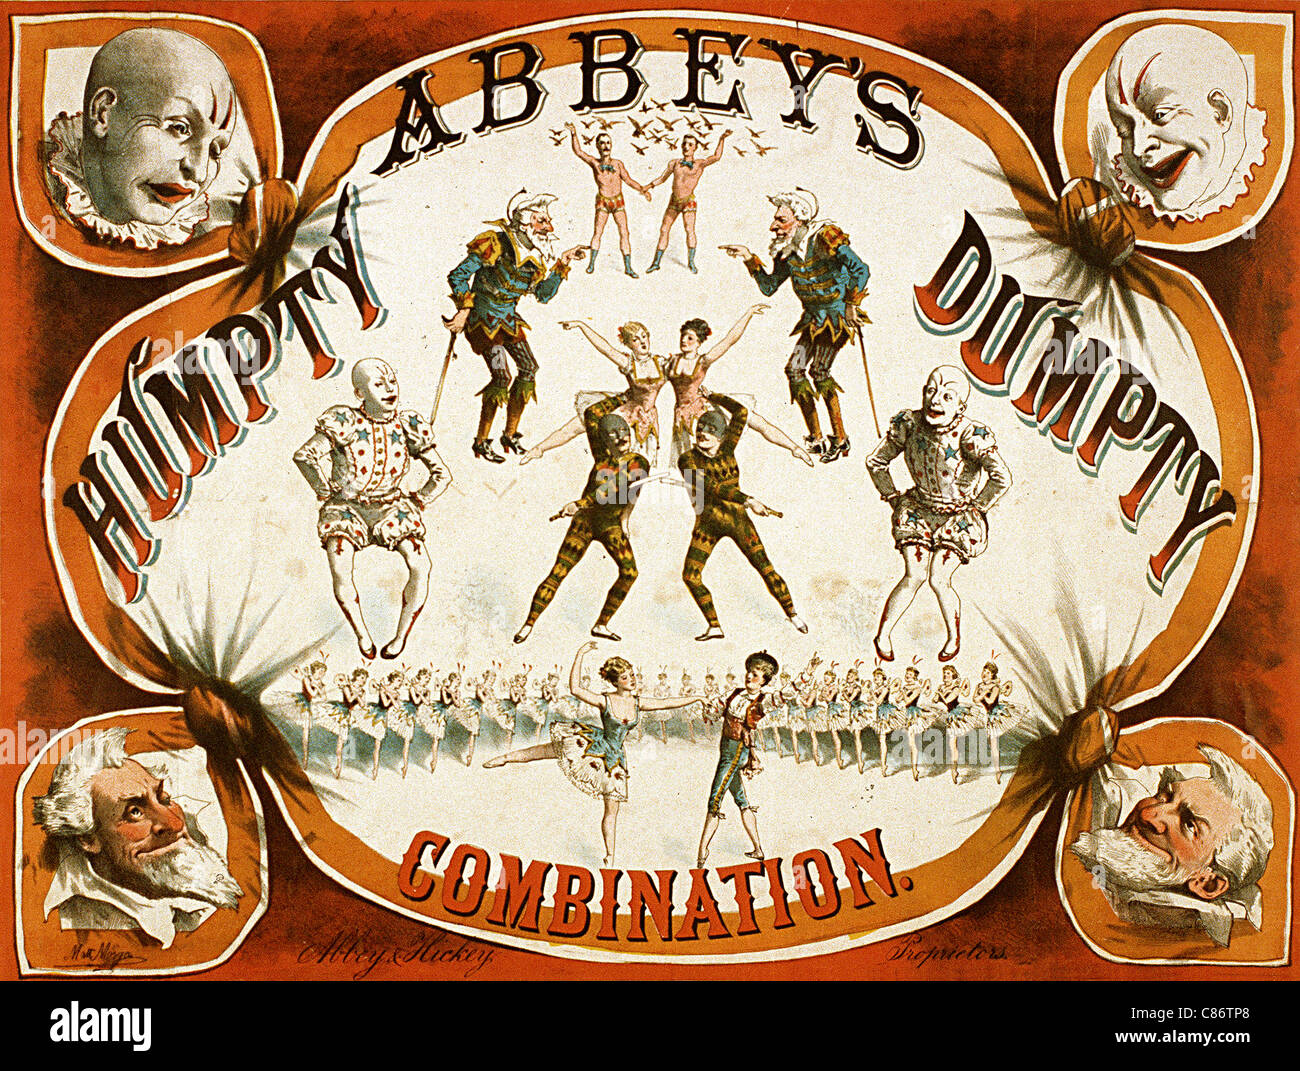 La combinaison de l'abbaye de Humpty Dumpty Affiche de cirque Banque D'Images